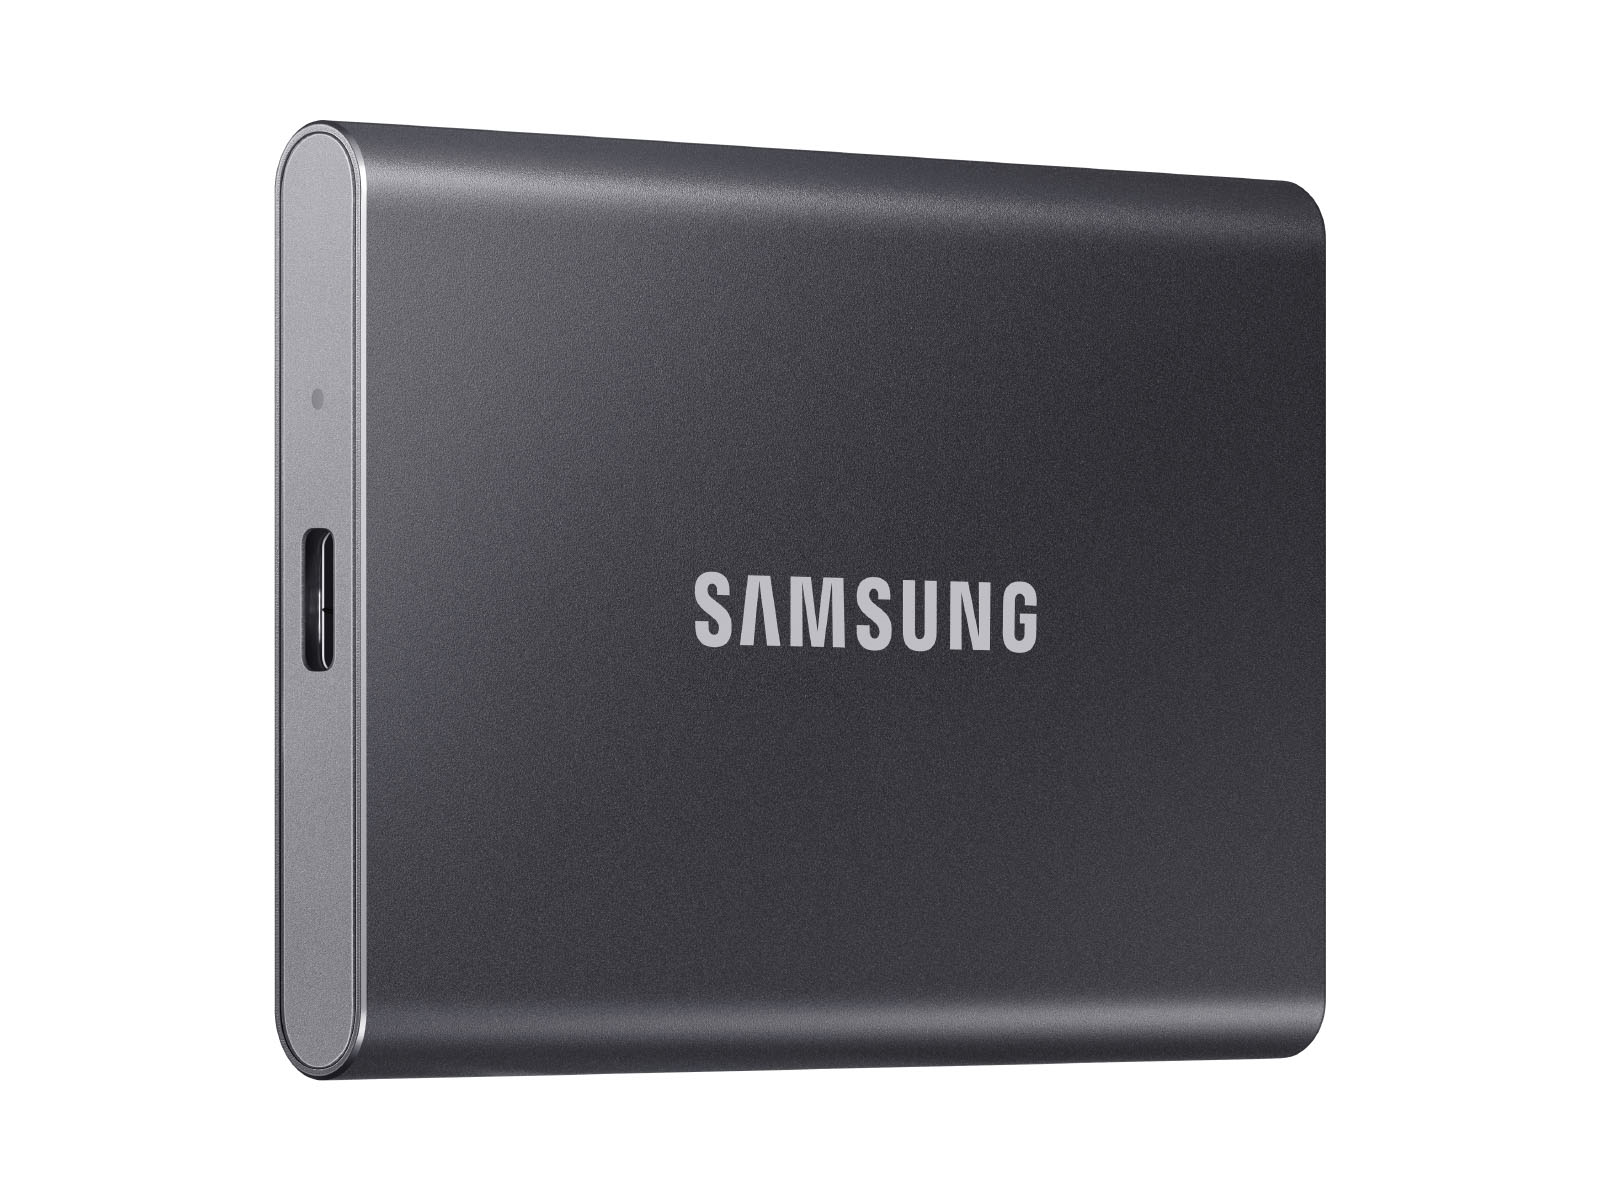 Portable SSD T7 USB 3.2 500GB (Gray) Memory & Storage - MU-PC500T/AM |  Samsung US